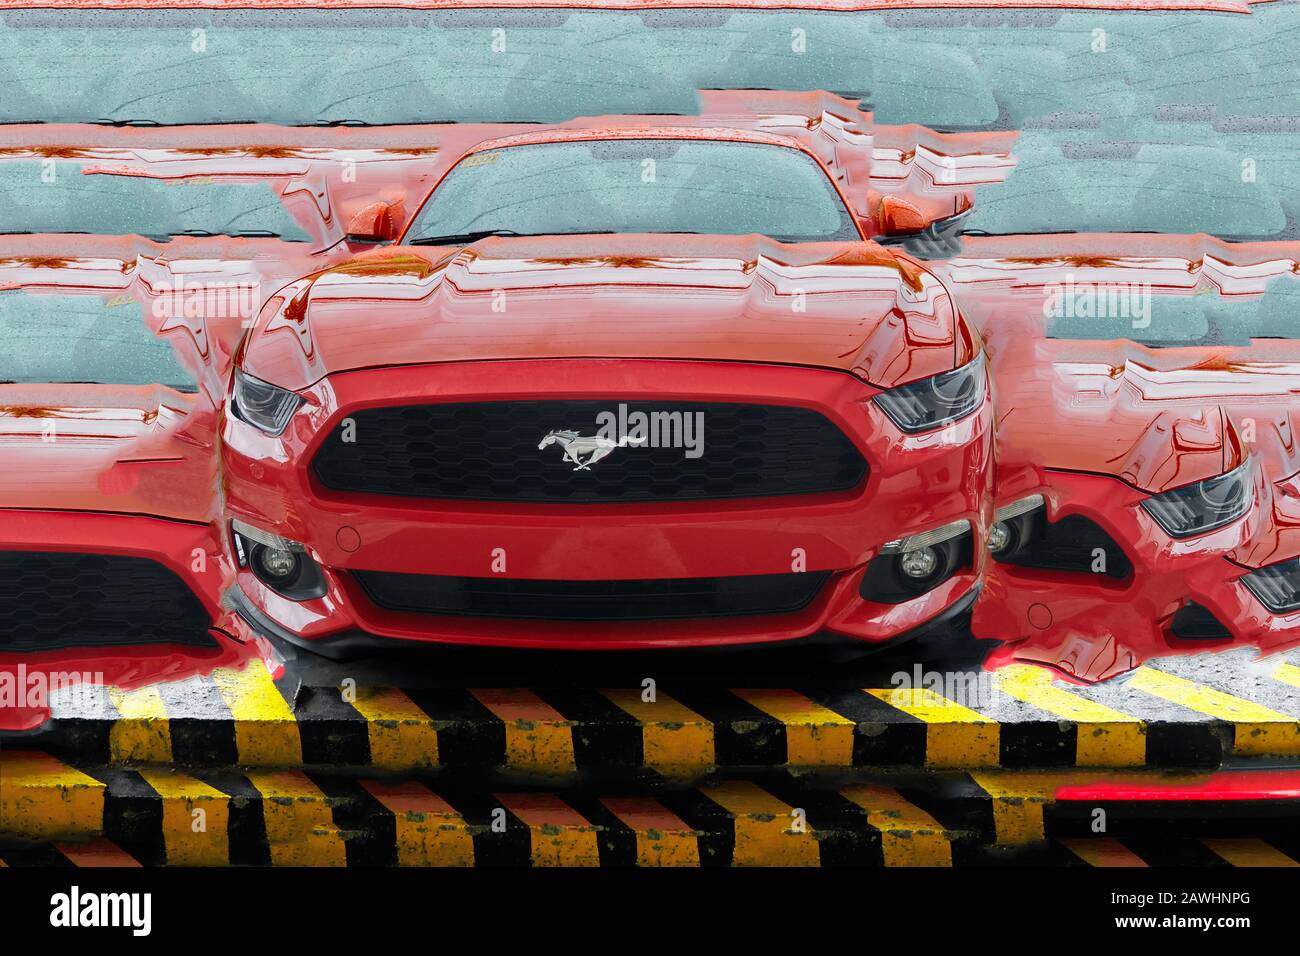 Iloilo City, Filippine: Auto sportiva Ford Mustang di colore rosso, fotografata dall'angolo basso anteriore, ritoccata a un collage Foto Stock